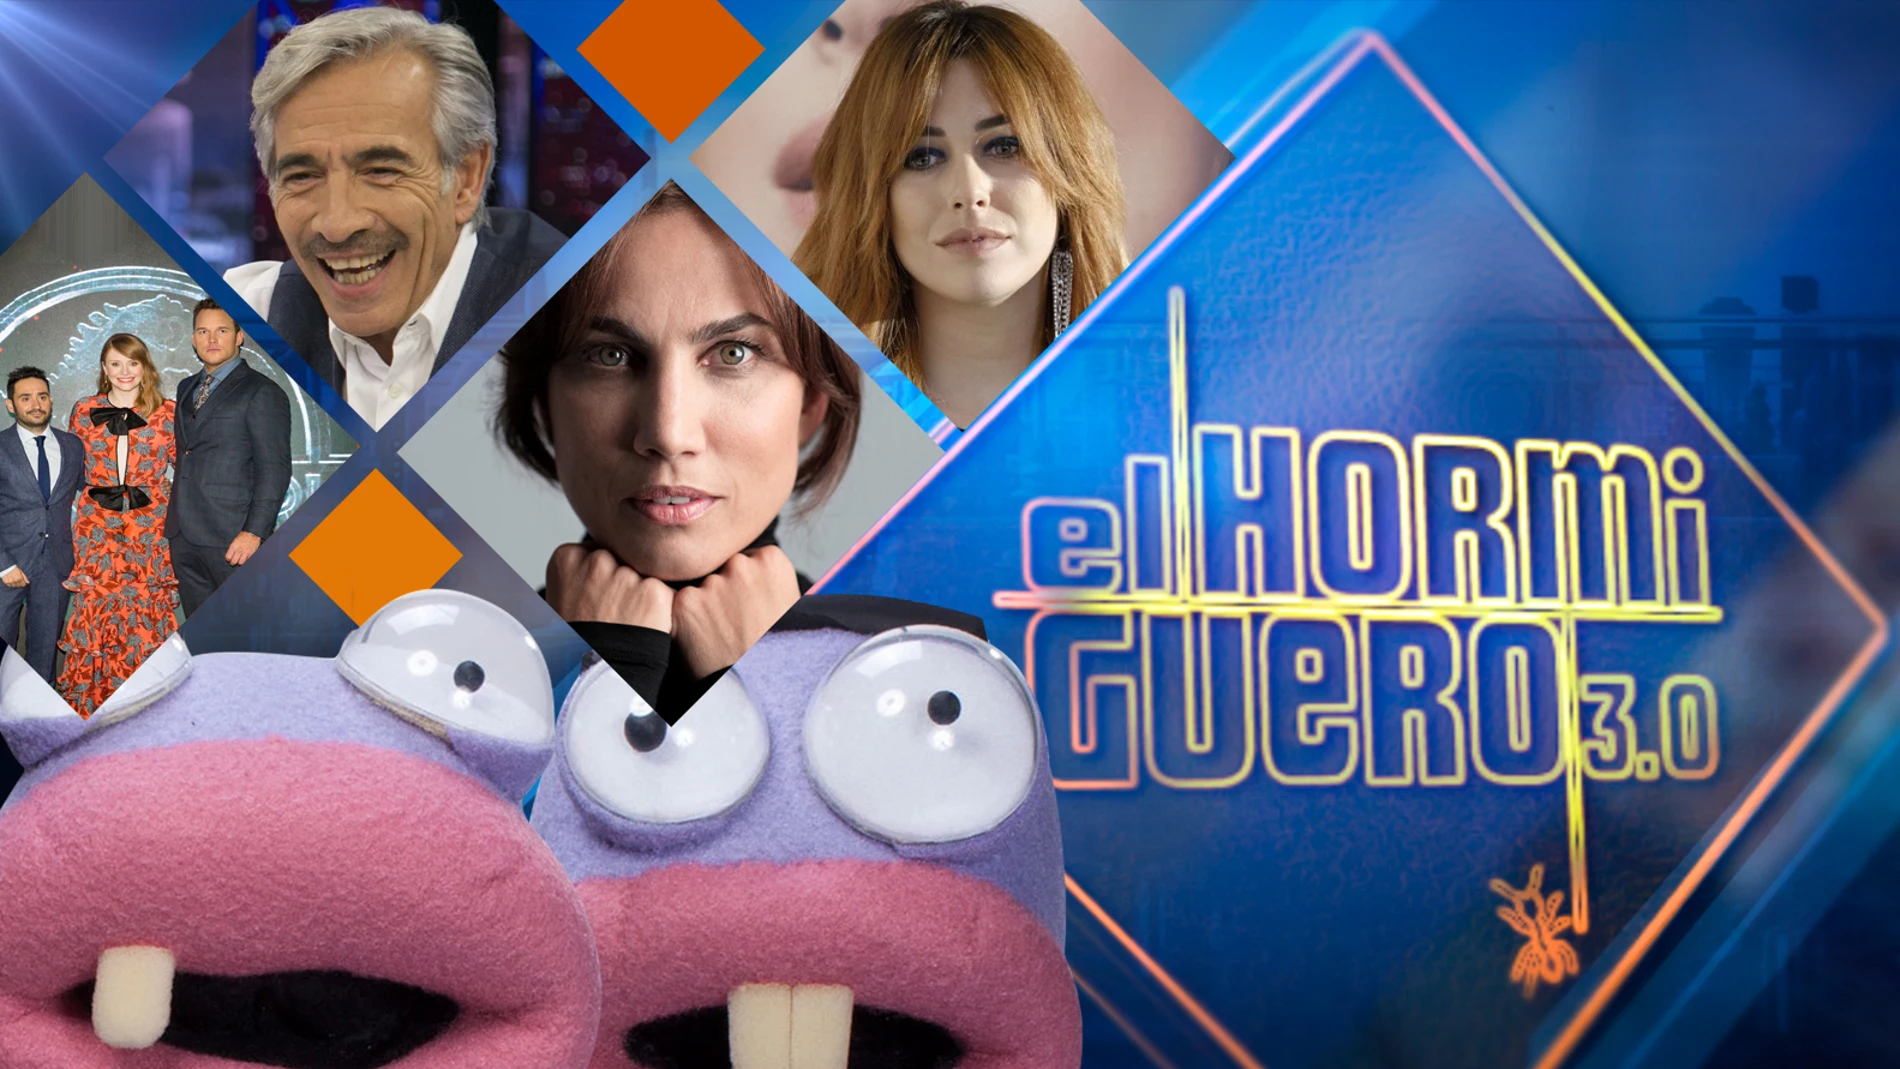 J. Bayona, Chris Pratt y Bryce Dallas Howard, Imanol Arias, Toni Acosta y Blanca Suárez visitarán 'El Hormiguero 3.0' la próxima semana